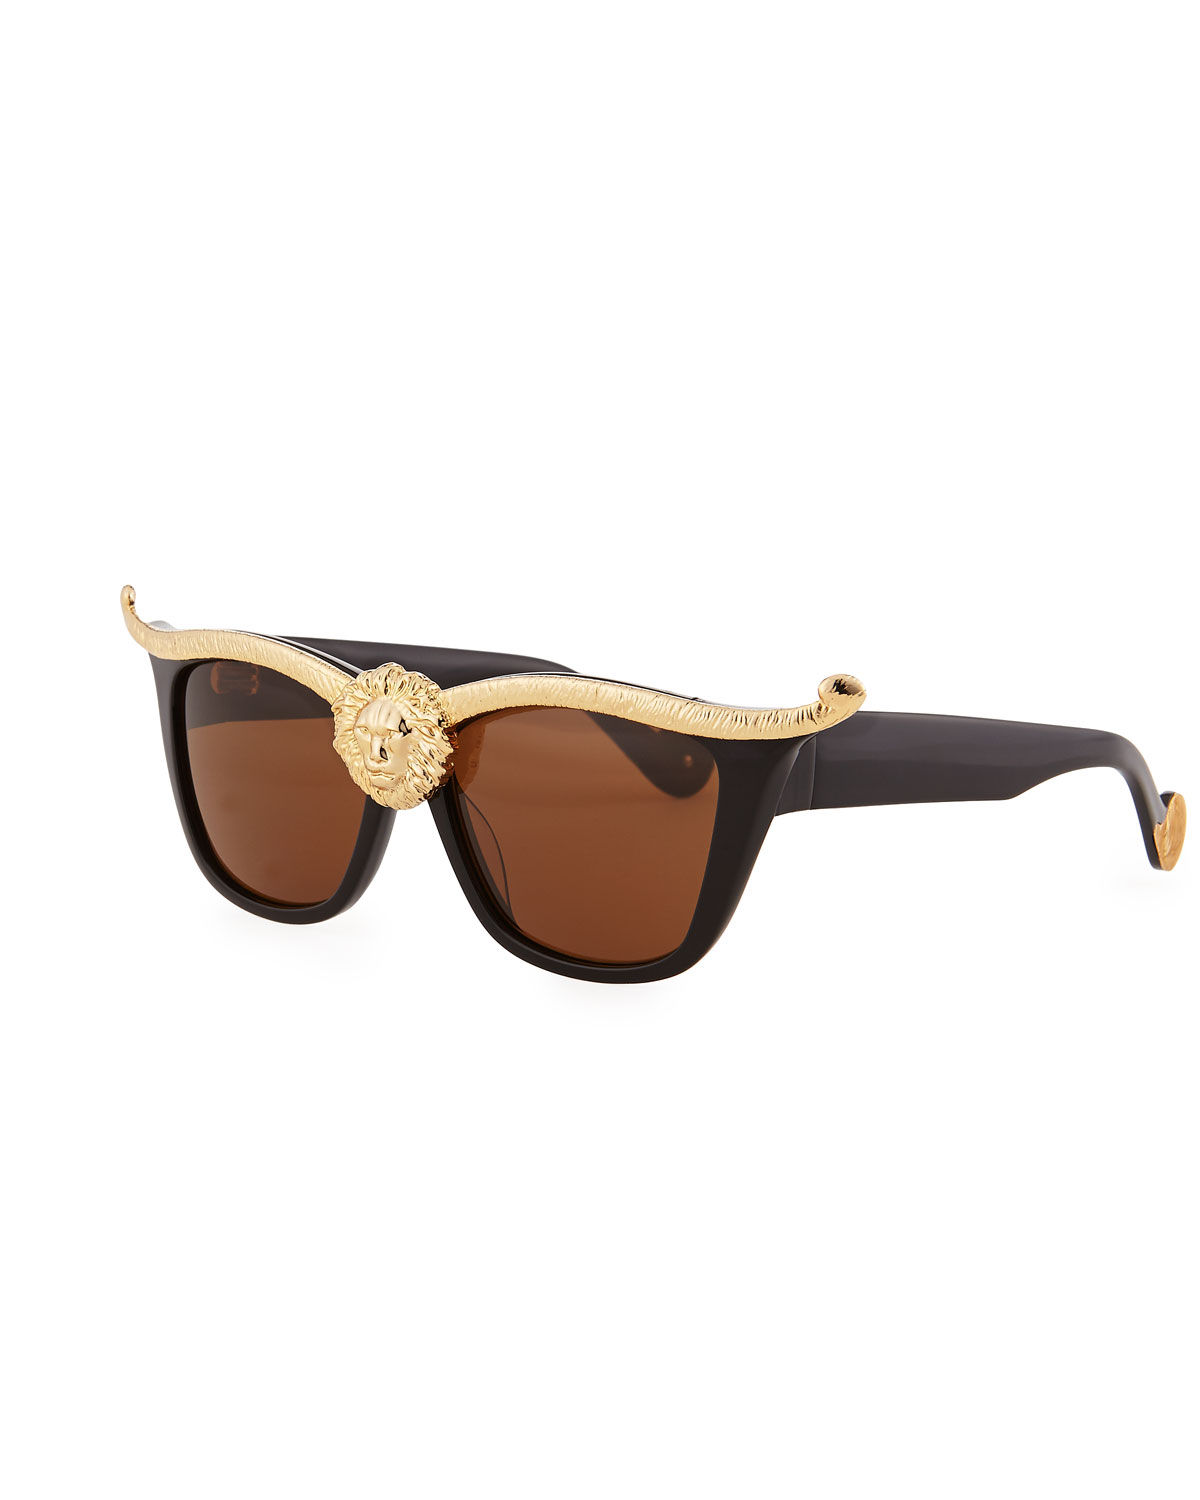 Anna karin karlsson Lioness Sunglasses in Metallic for Men - Save 4% | Lyst